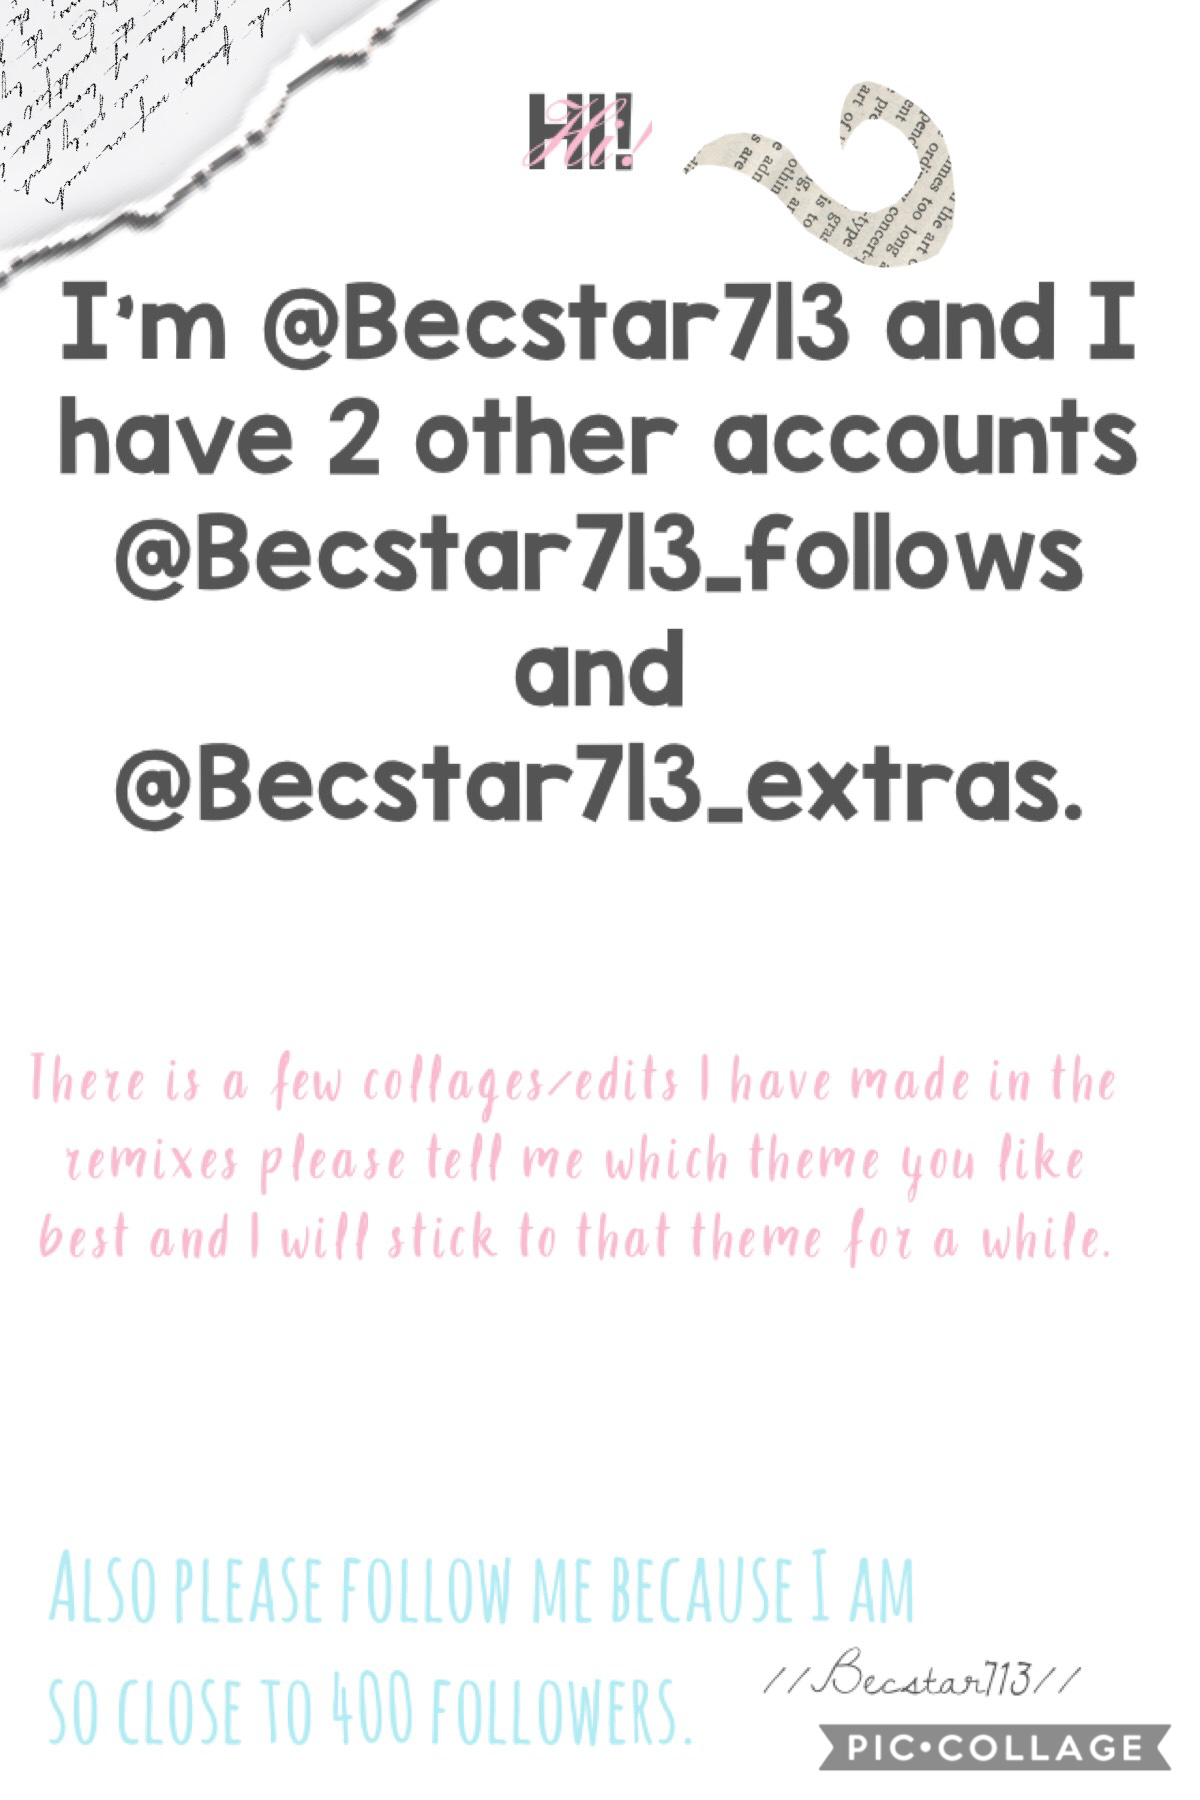 Hi! I’m Becstar713!